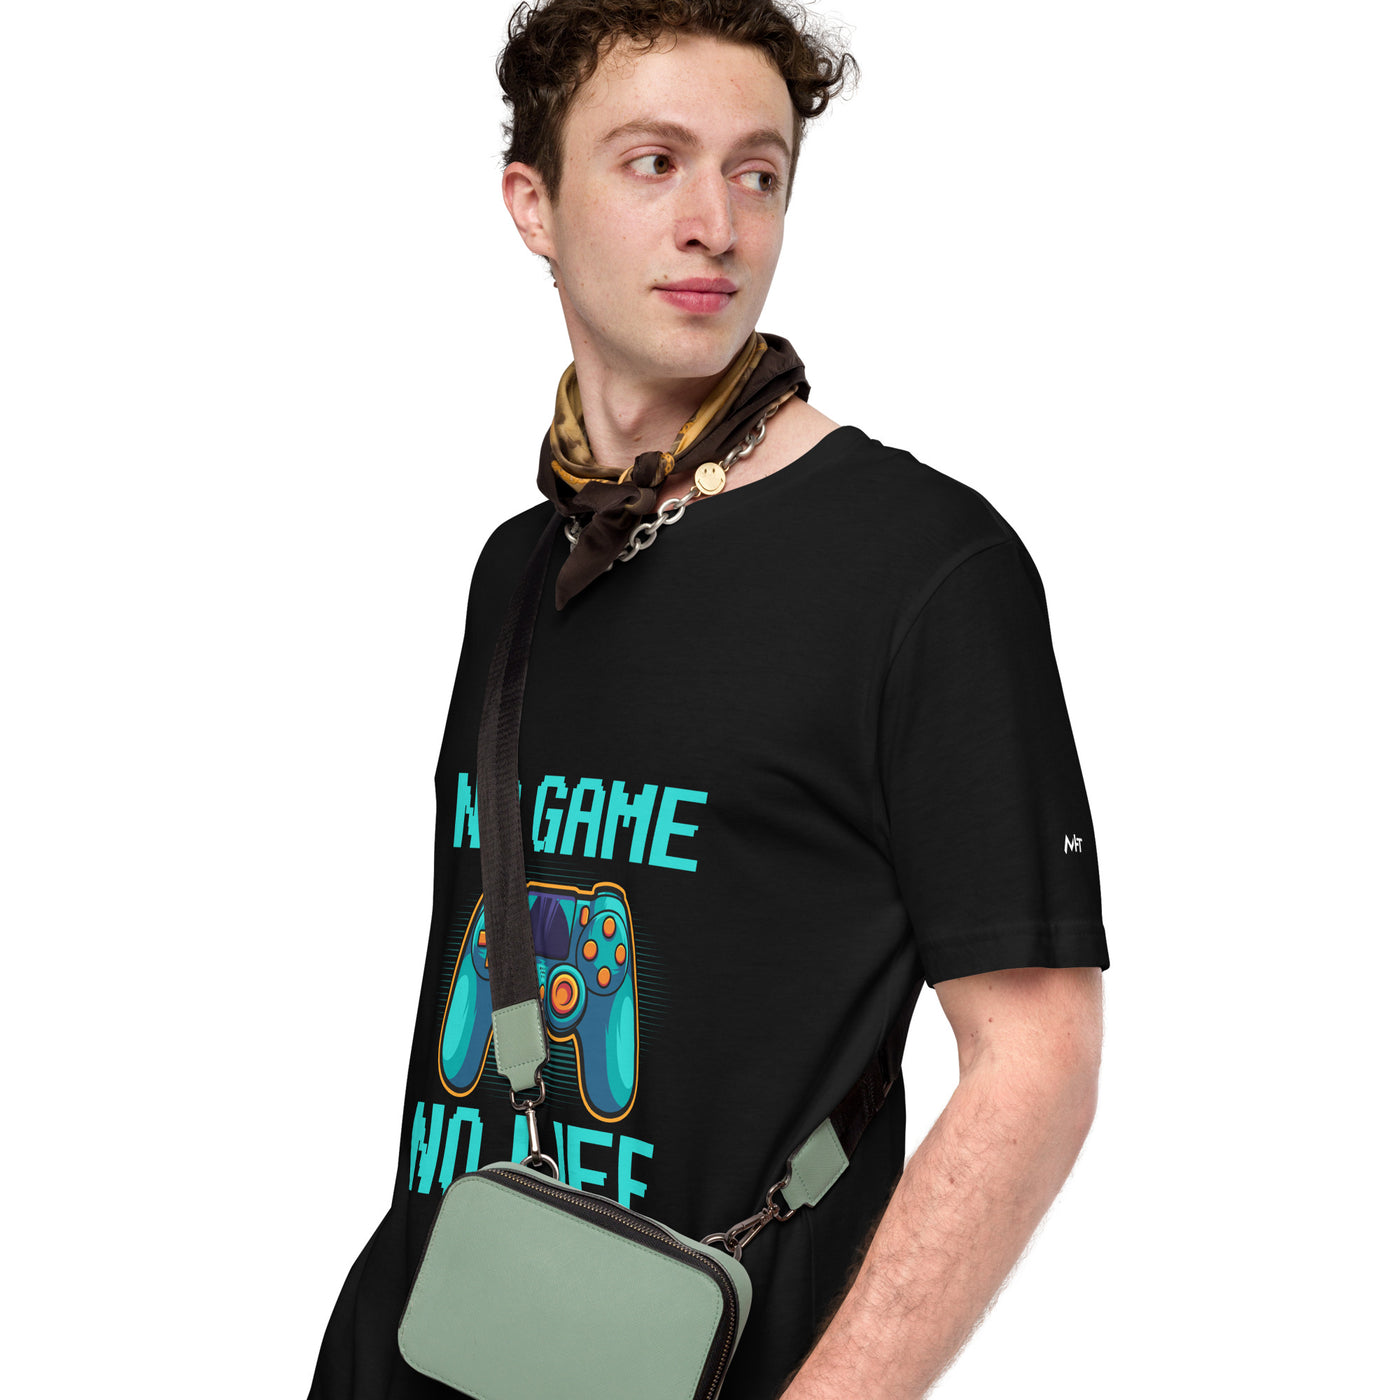 No Game; No Life - Unisex t-shirt